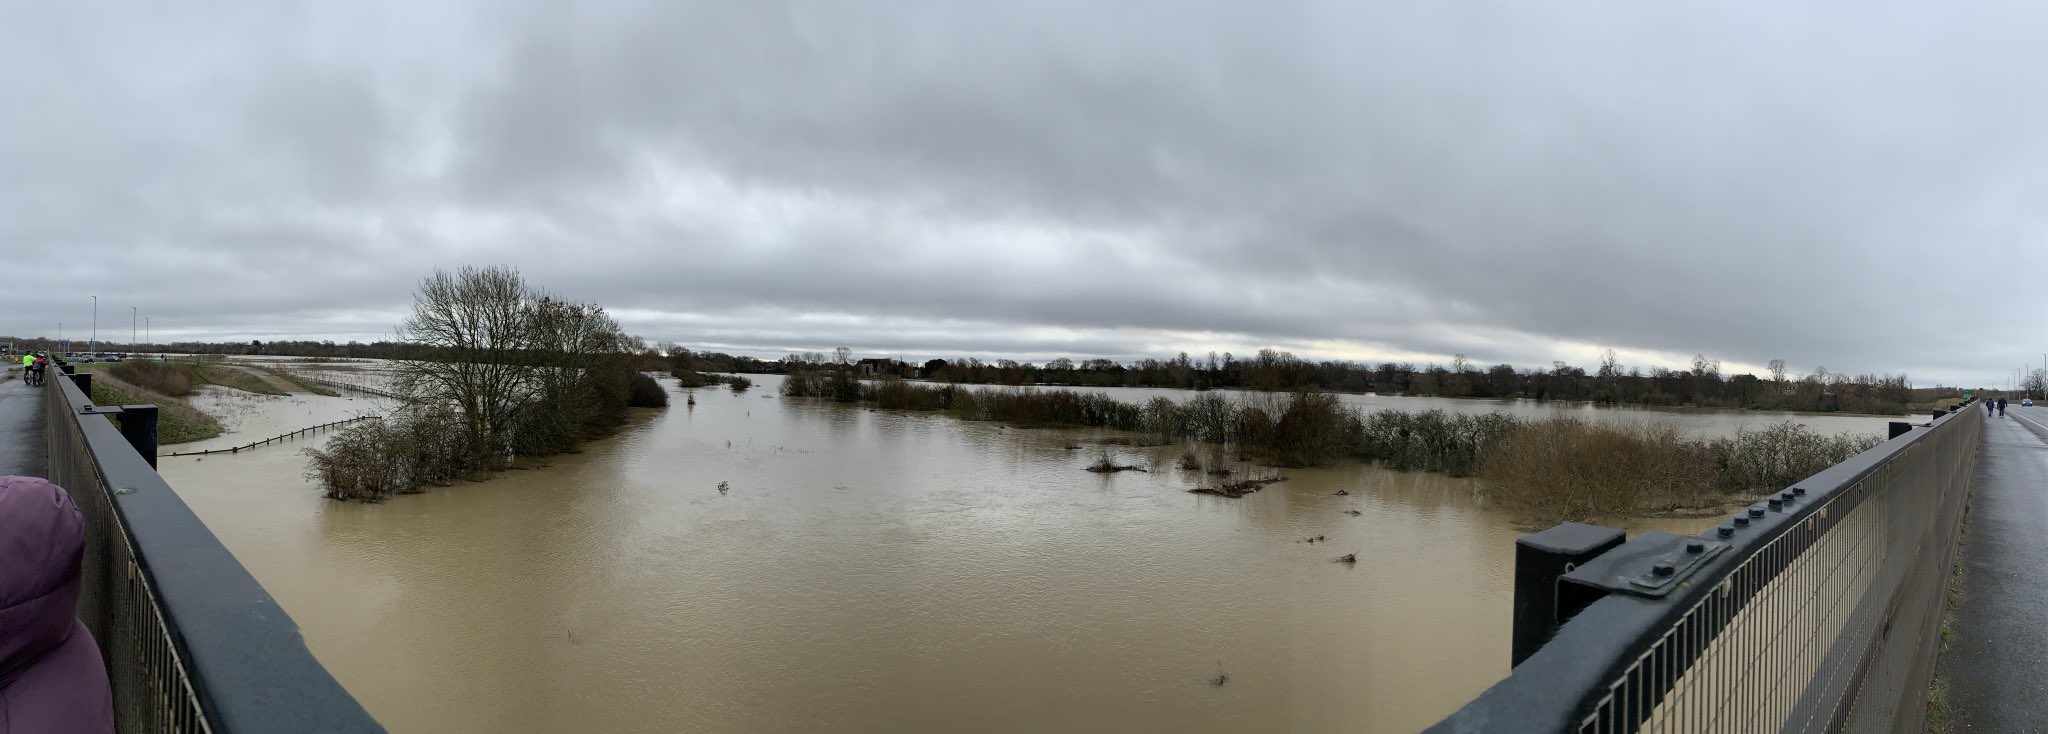 Наводнение в Британии. Фото: Twitter